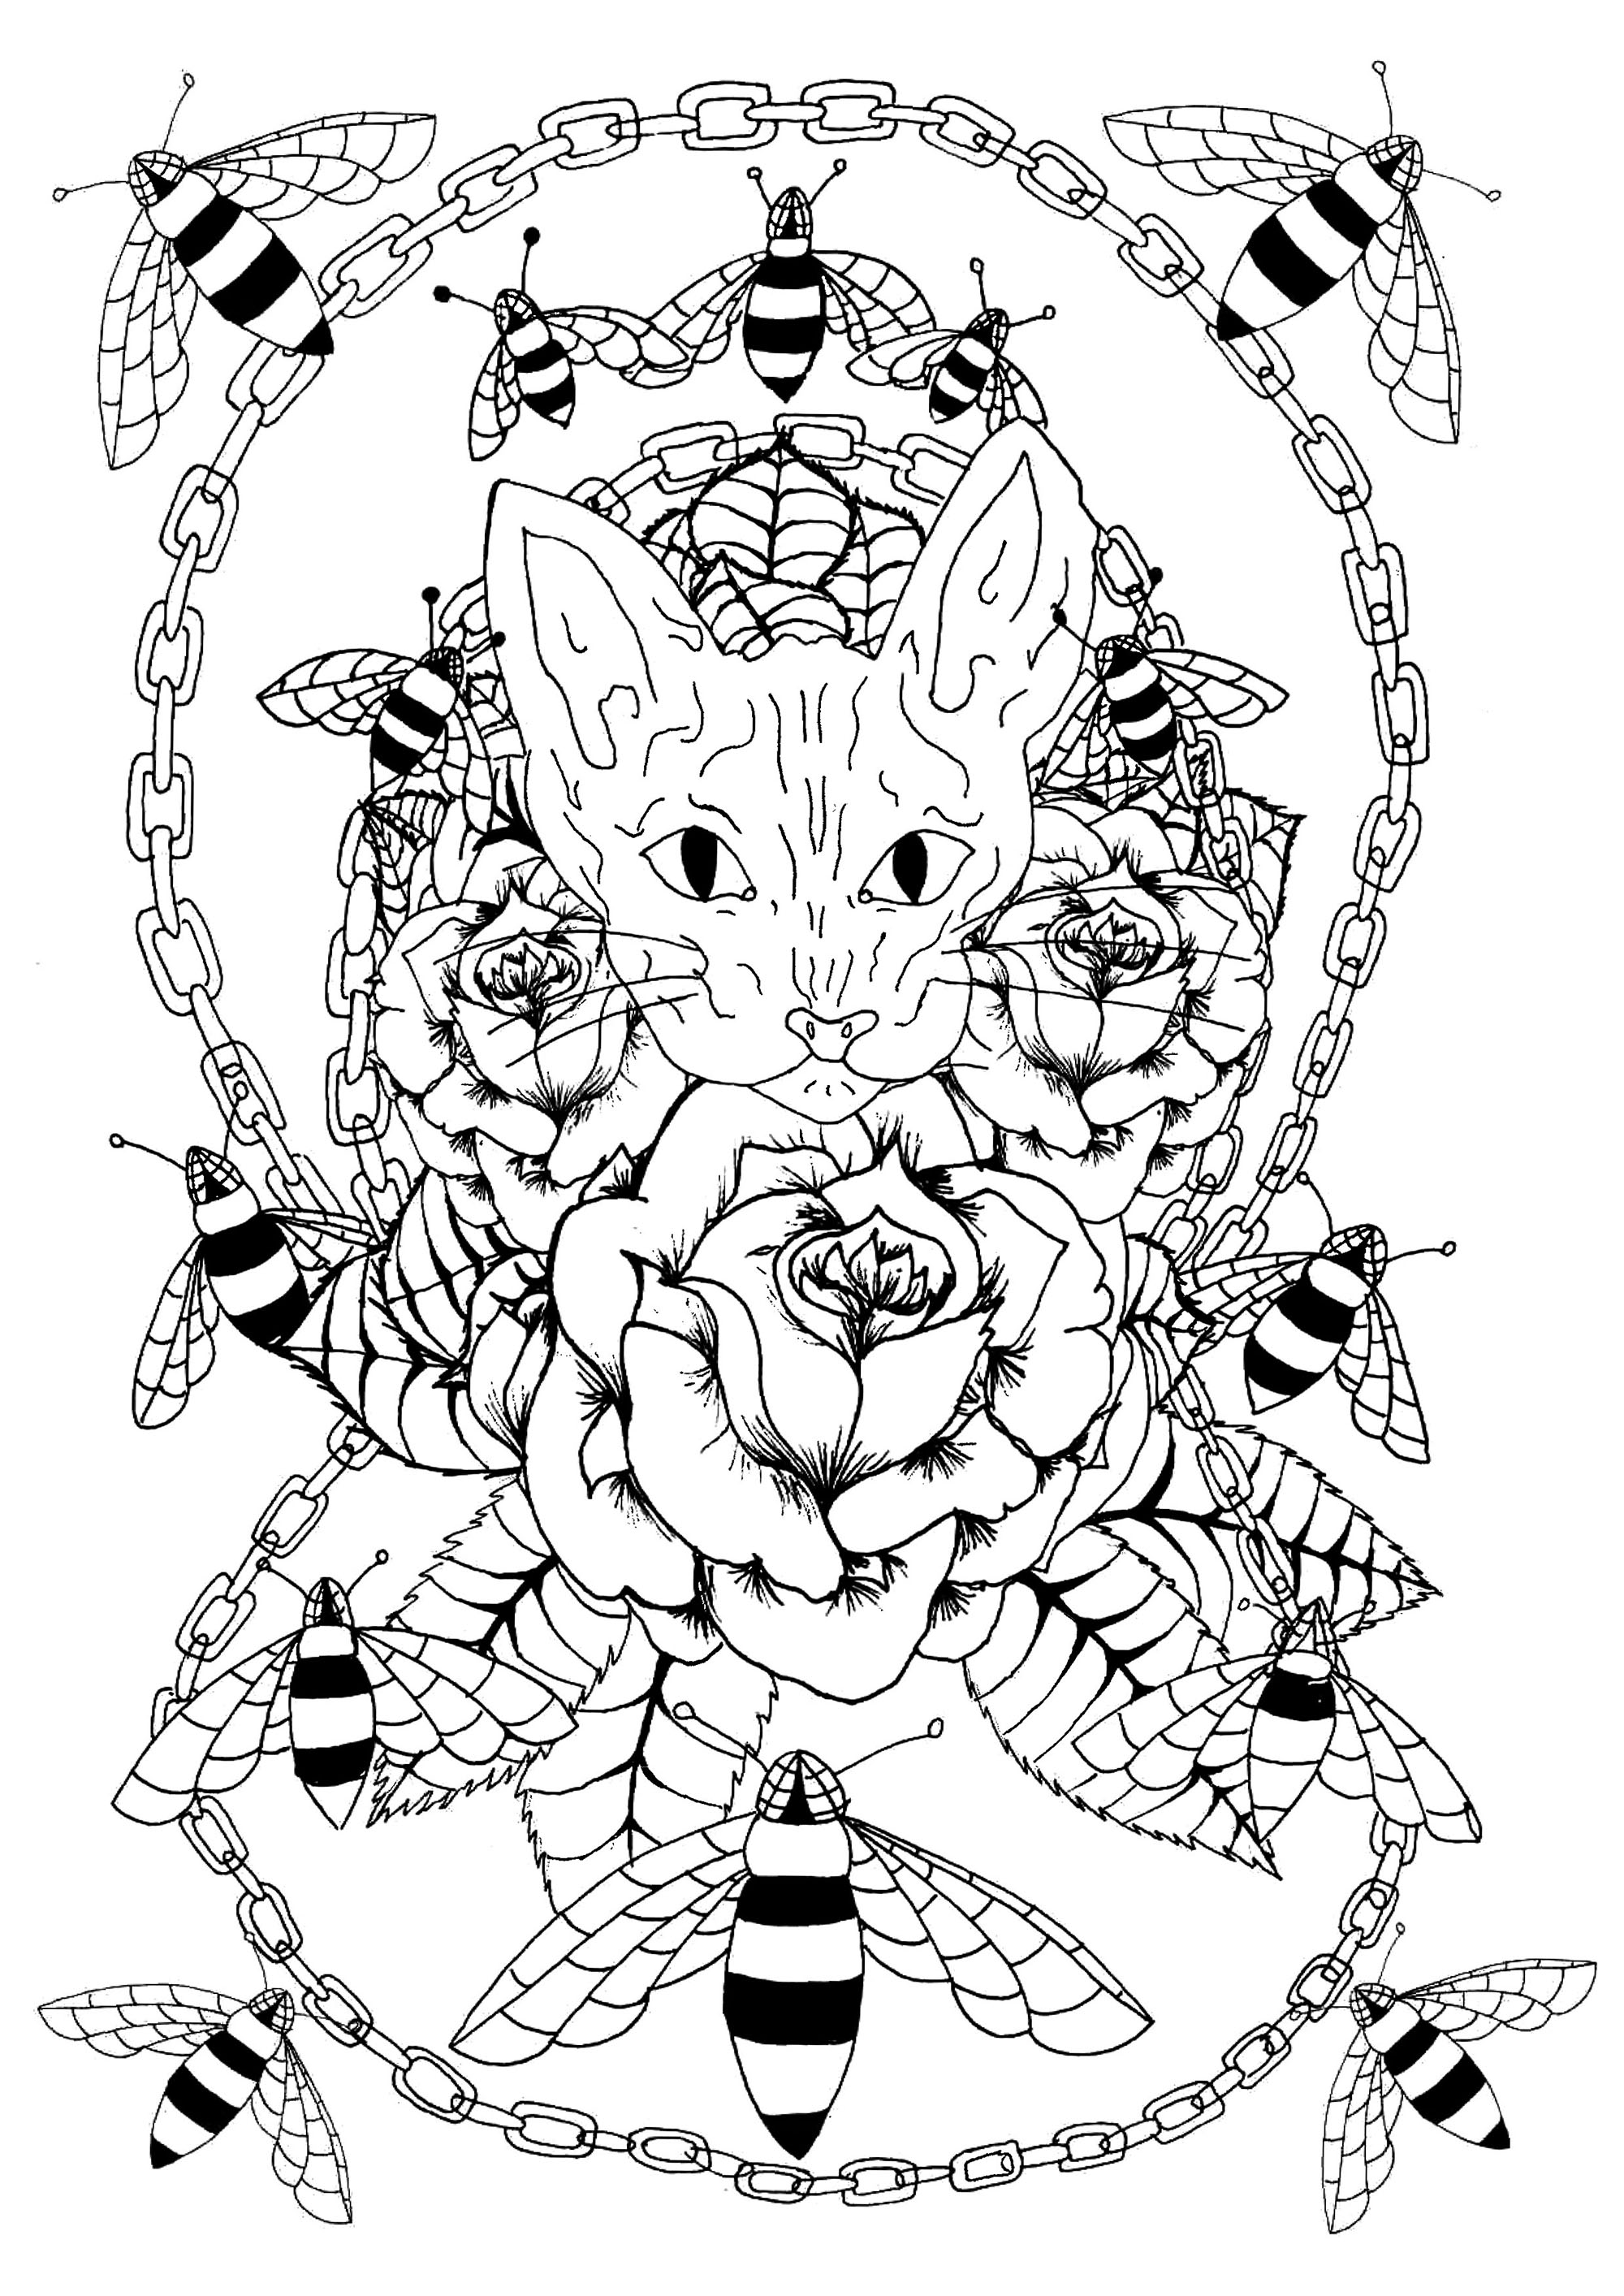 Cabeça de gato sphynx rodeada de rosas, abelhas e uma corrente metálica